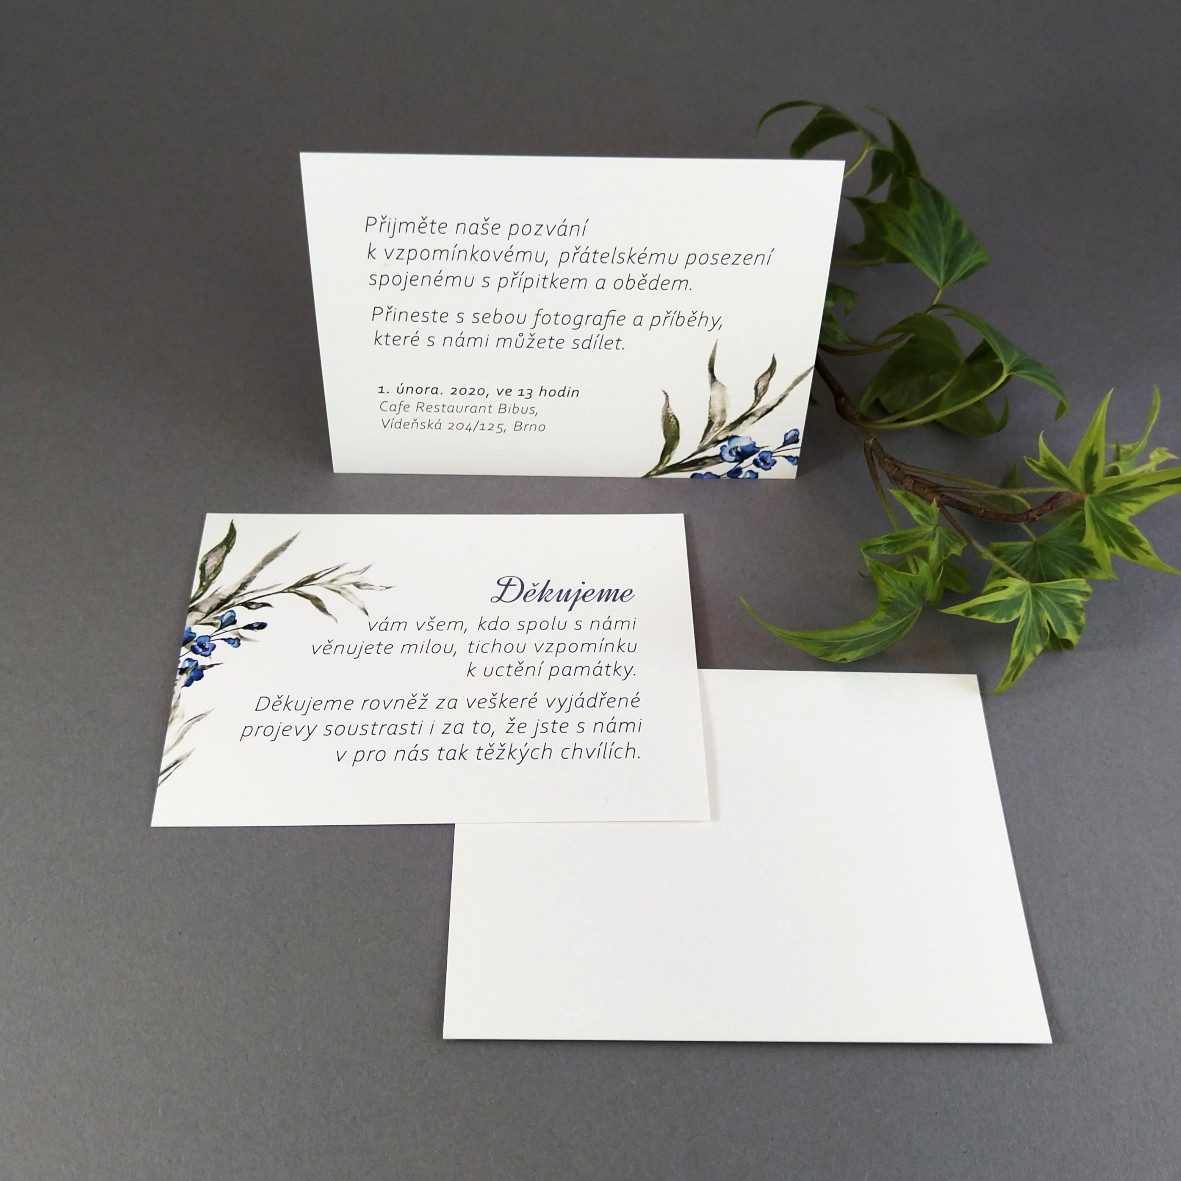 Pozvánka, informační karta – s motivem ratolesti a drobných modrých květů, formát 100 × 70 mm, jednostranná